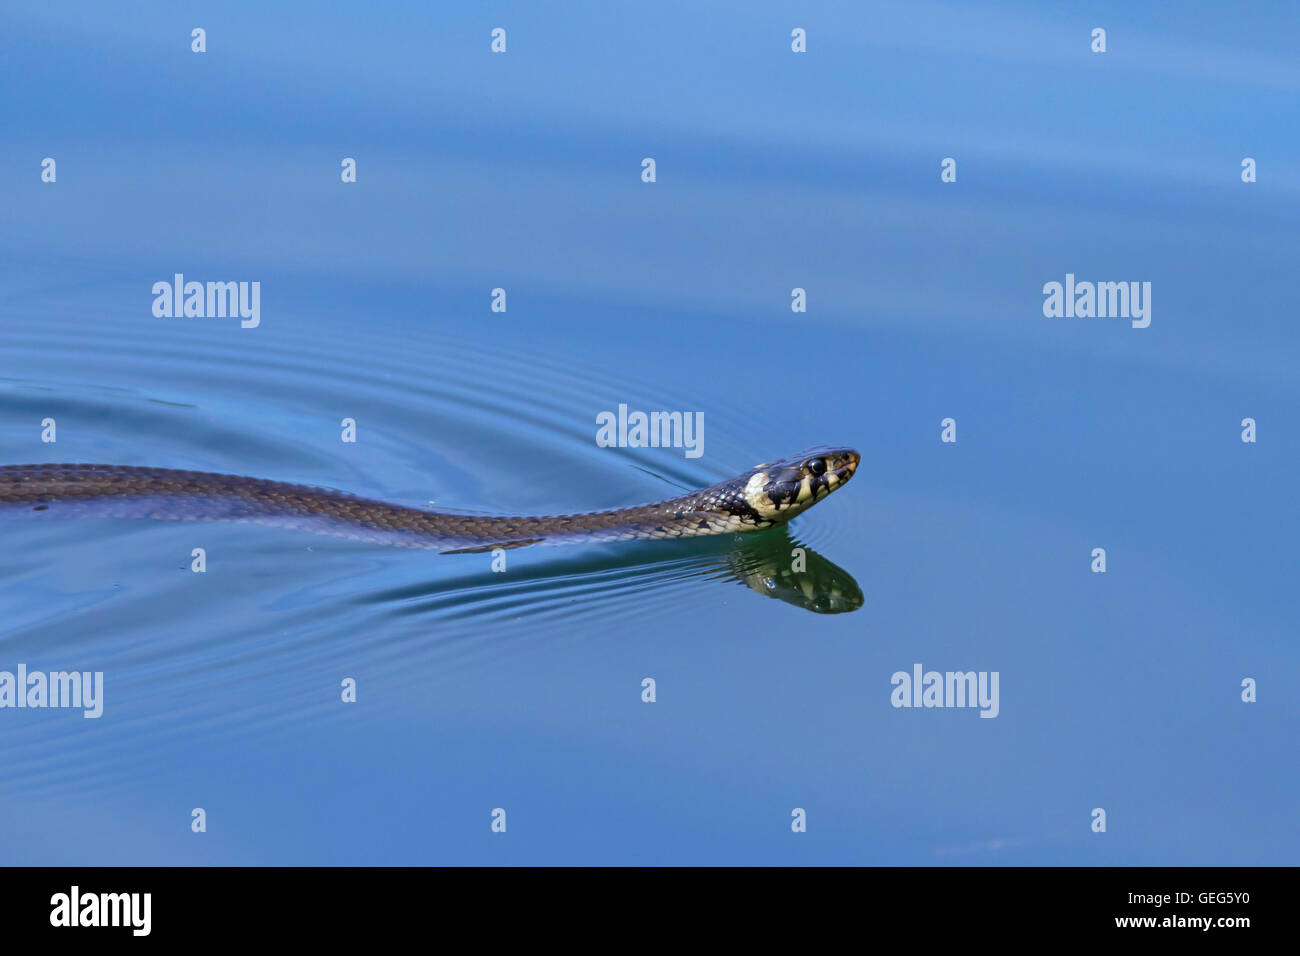 Biscia / inanellato snake / acqua snake (Natrix natrix) nuotare nel lago Foto Stock